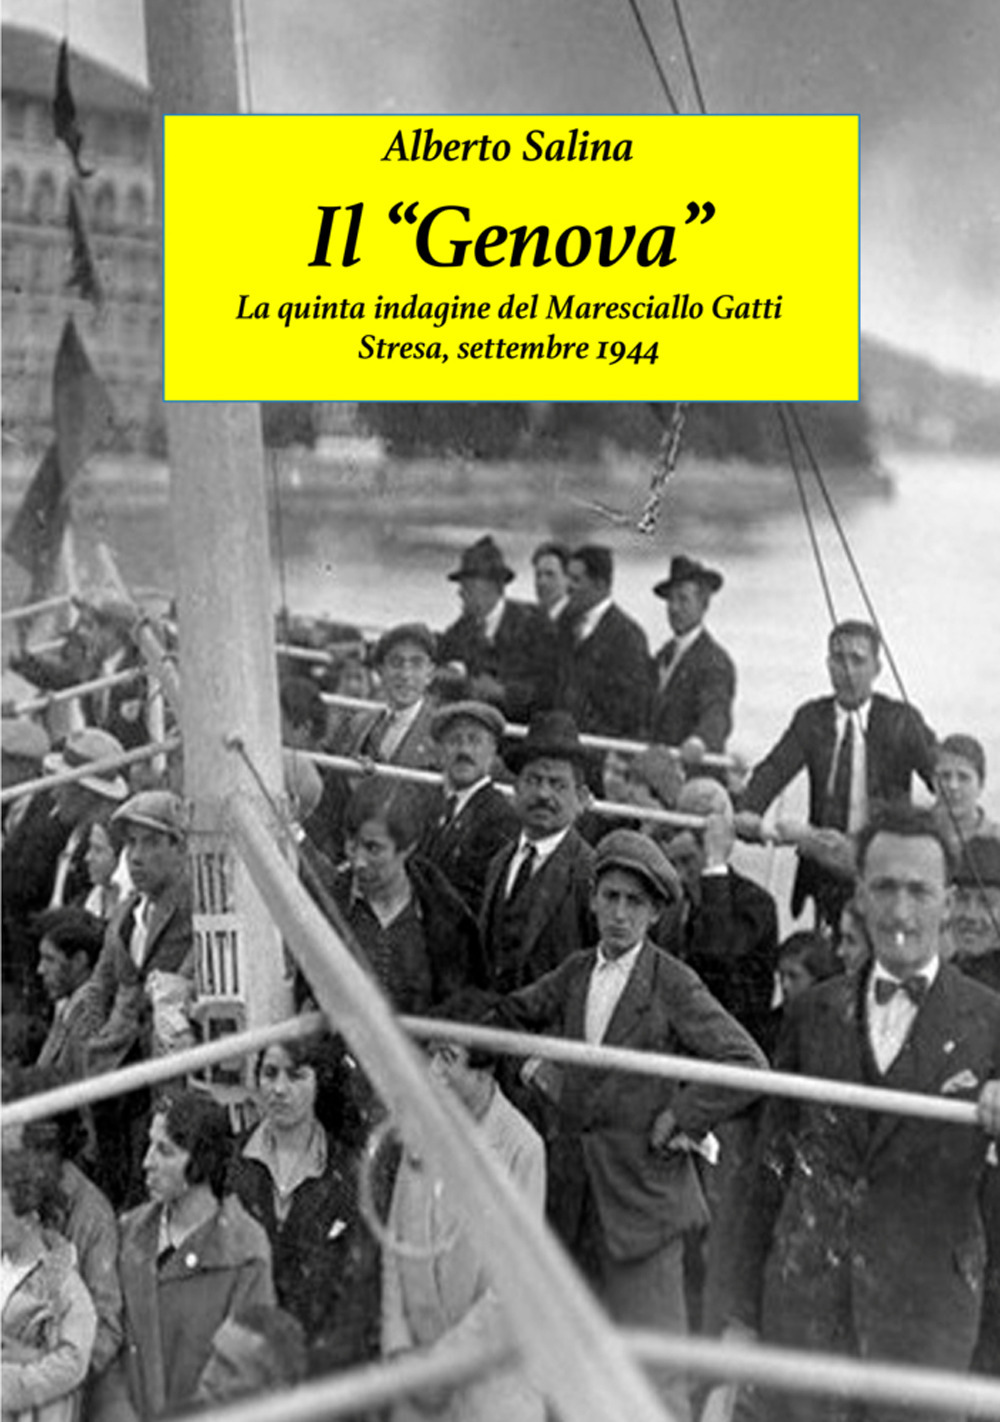 Image of Il «Genova». Un'altra indagine del maresciallo Gatti. Stresa, settembre 1943